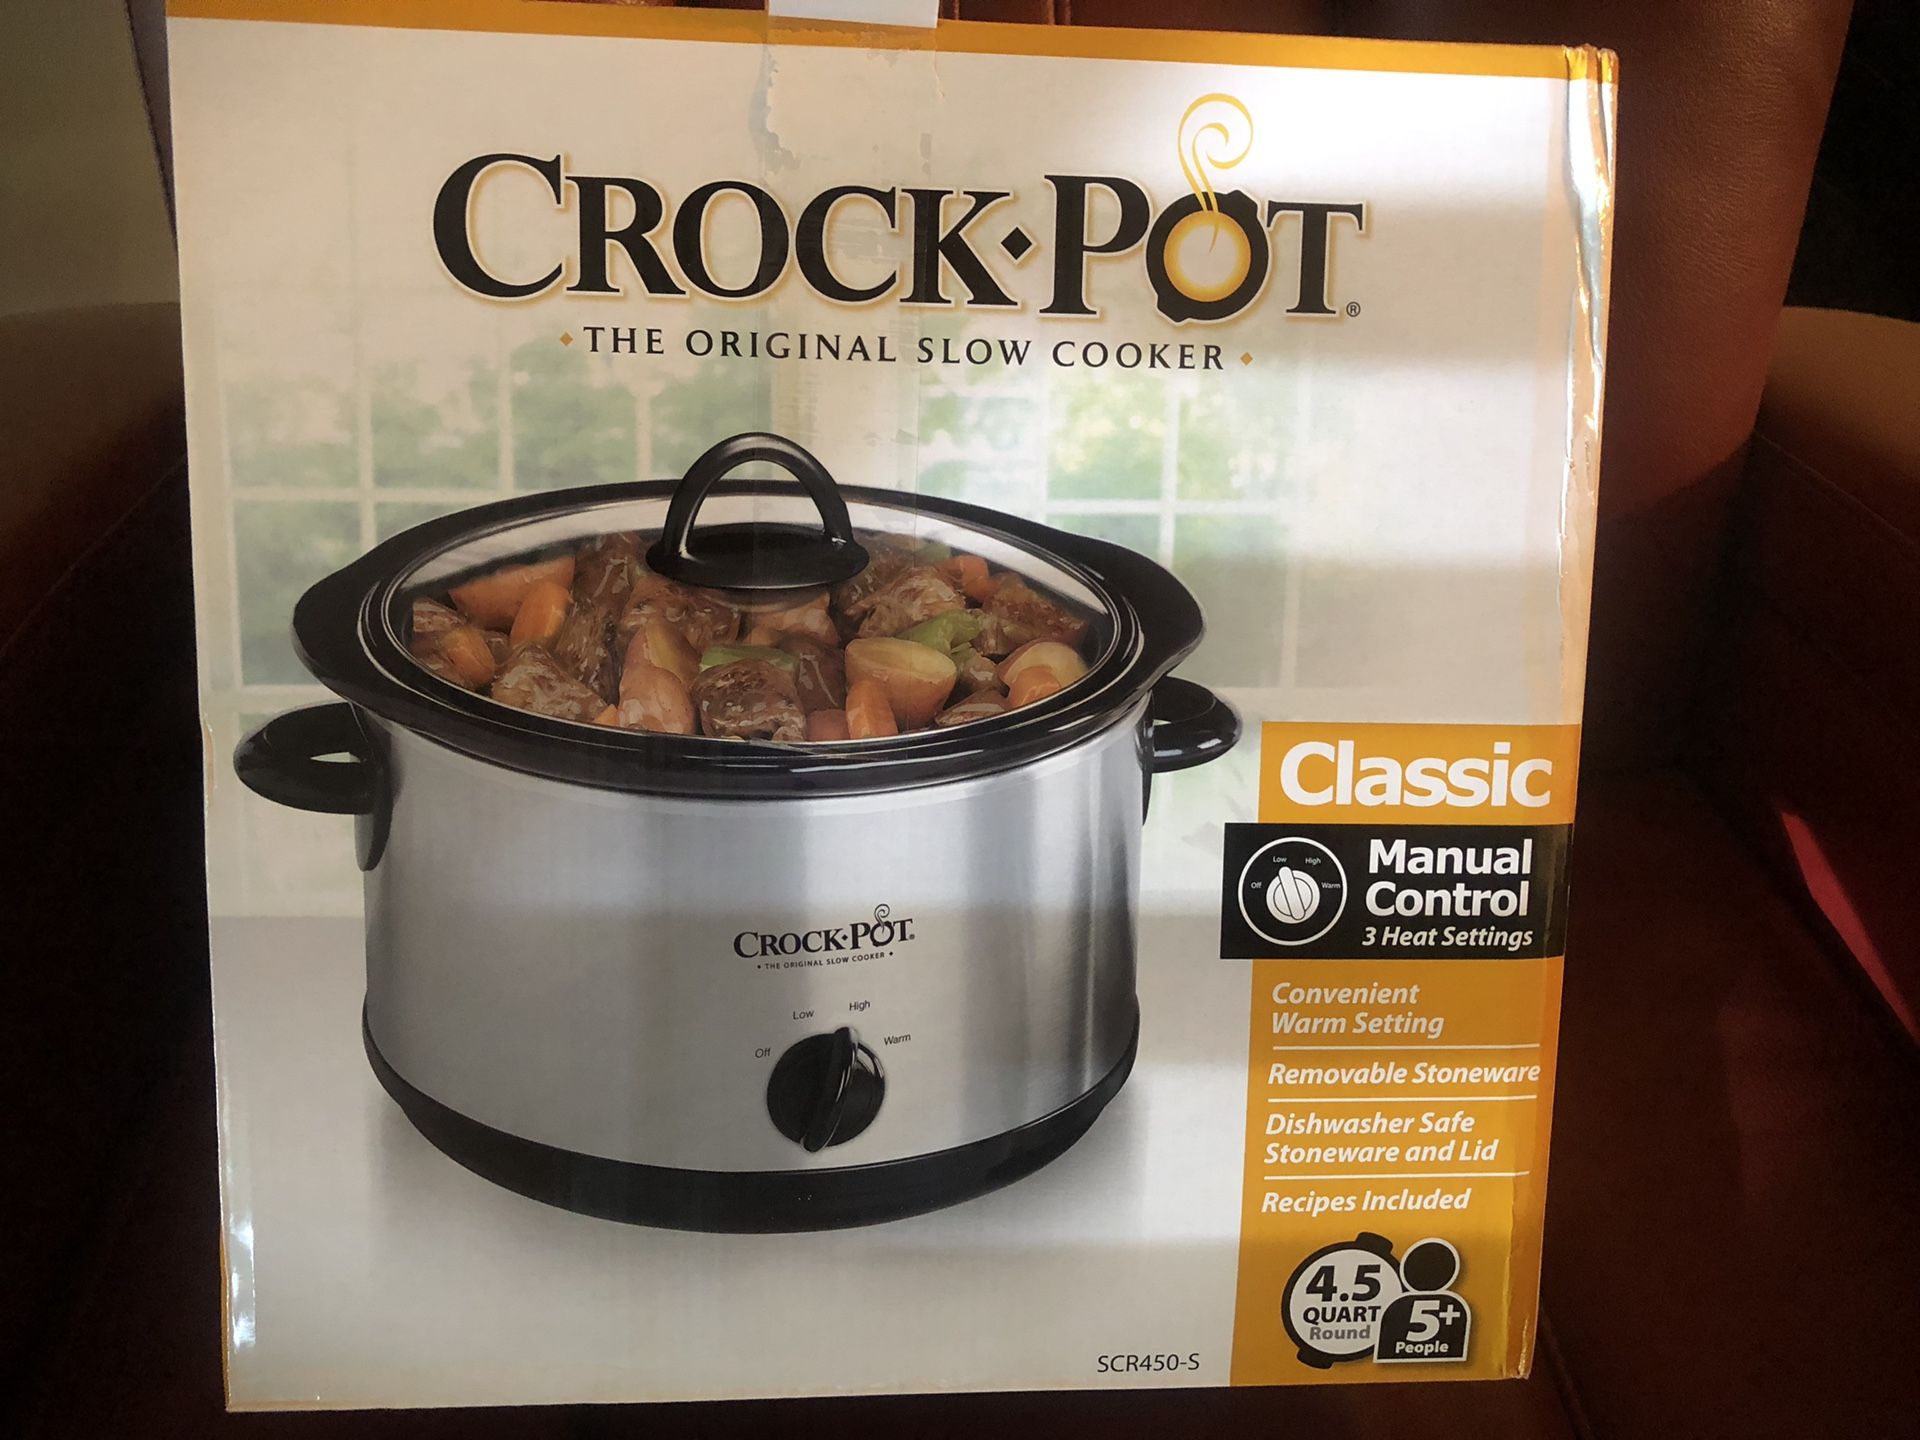 NEW Crock-Pot 4.5 qt Manual Slow Cooker -Silver